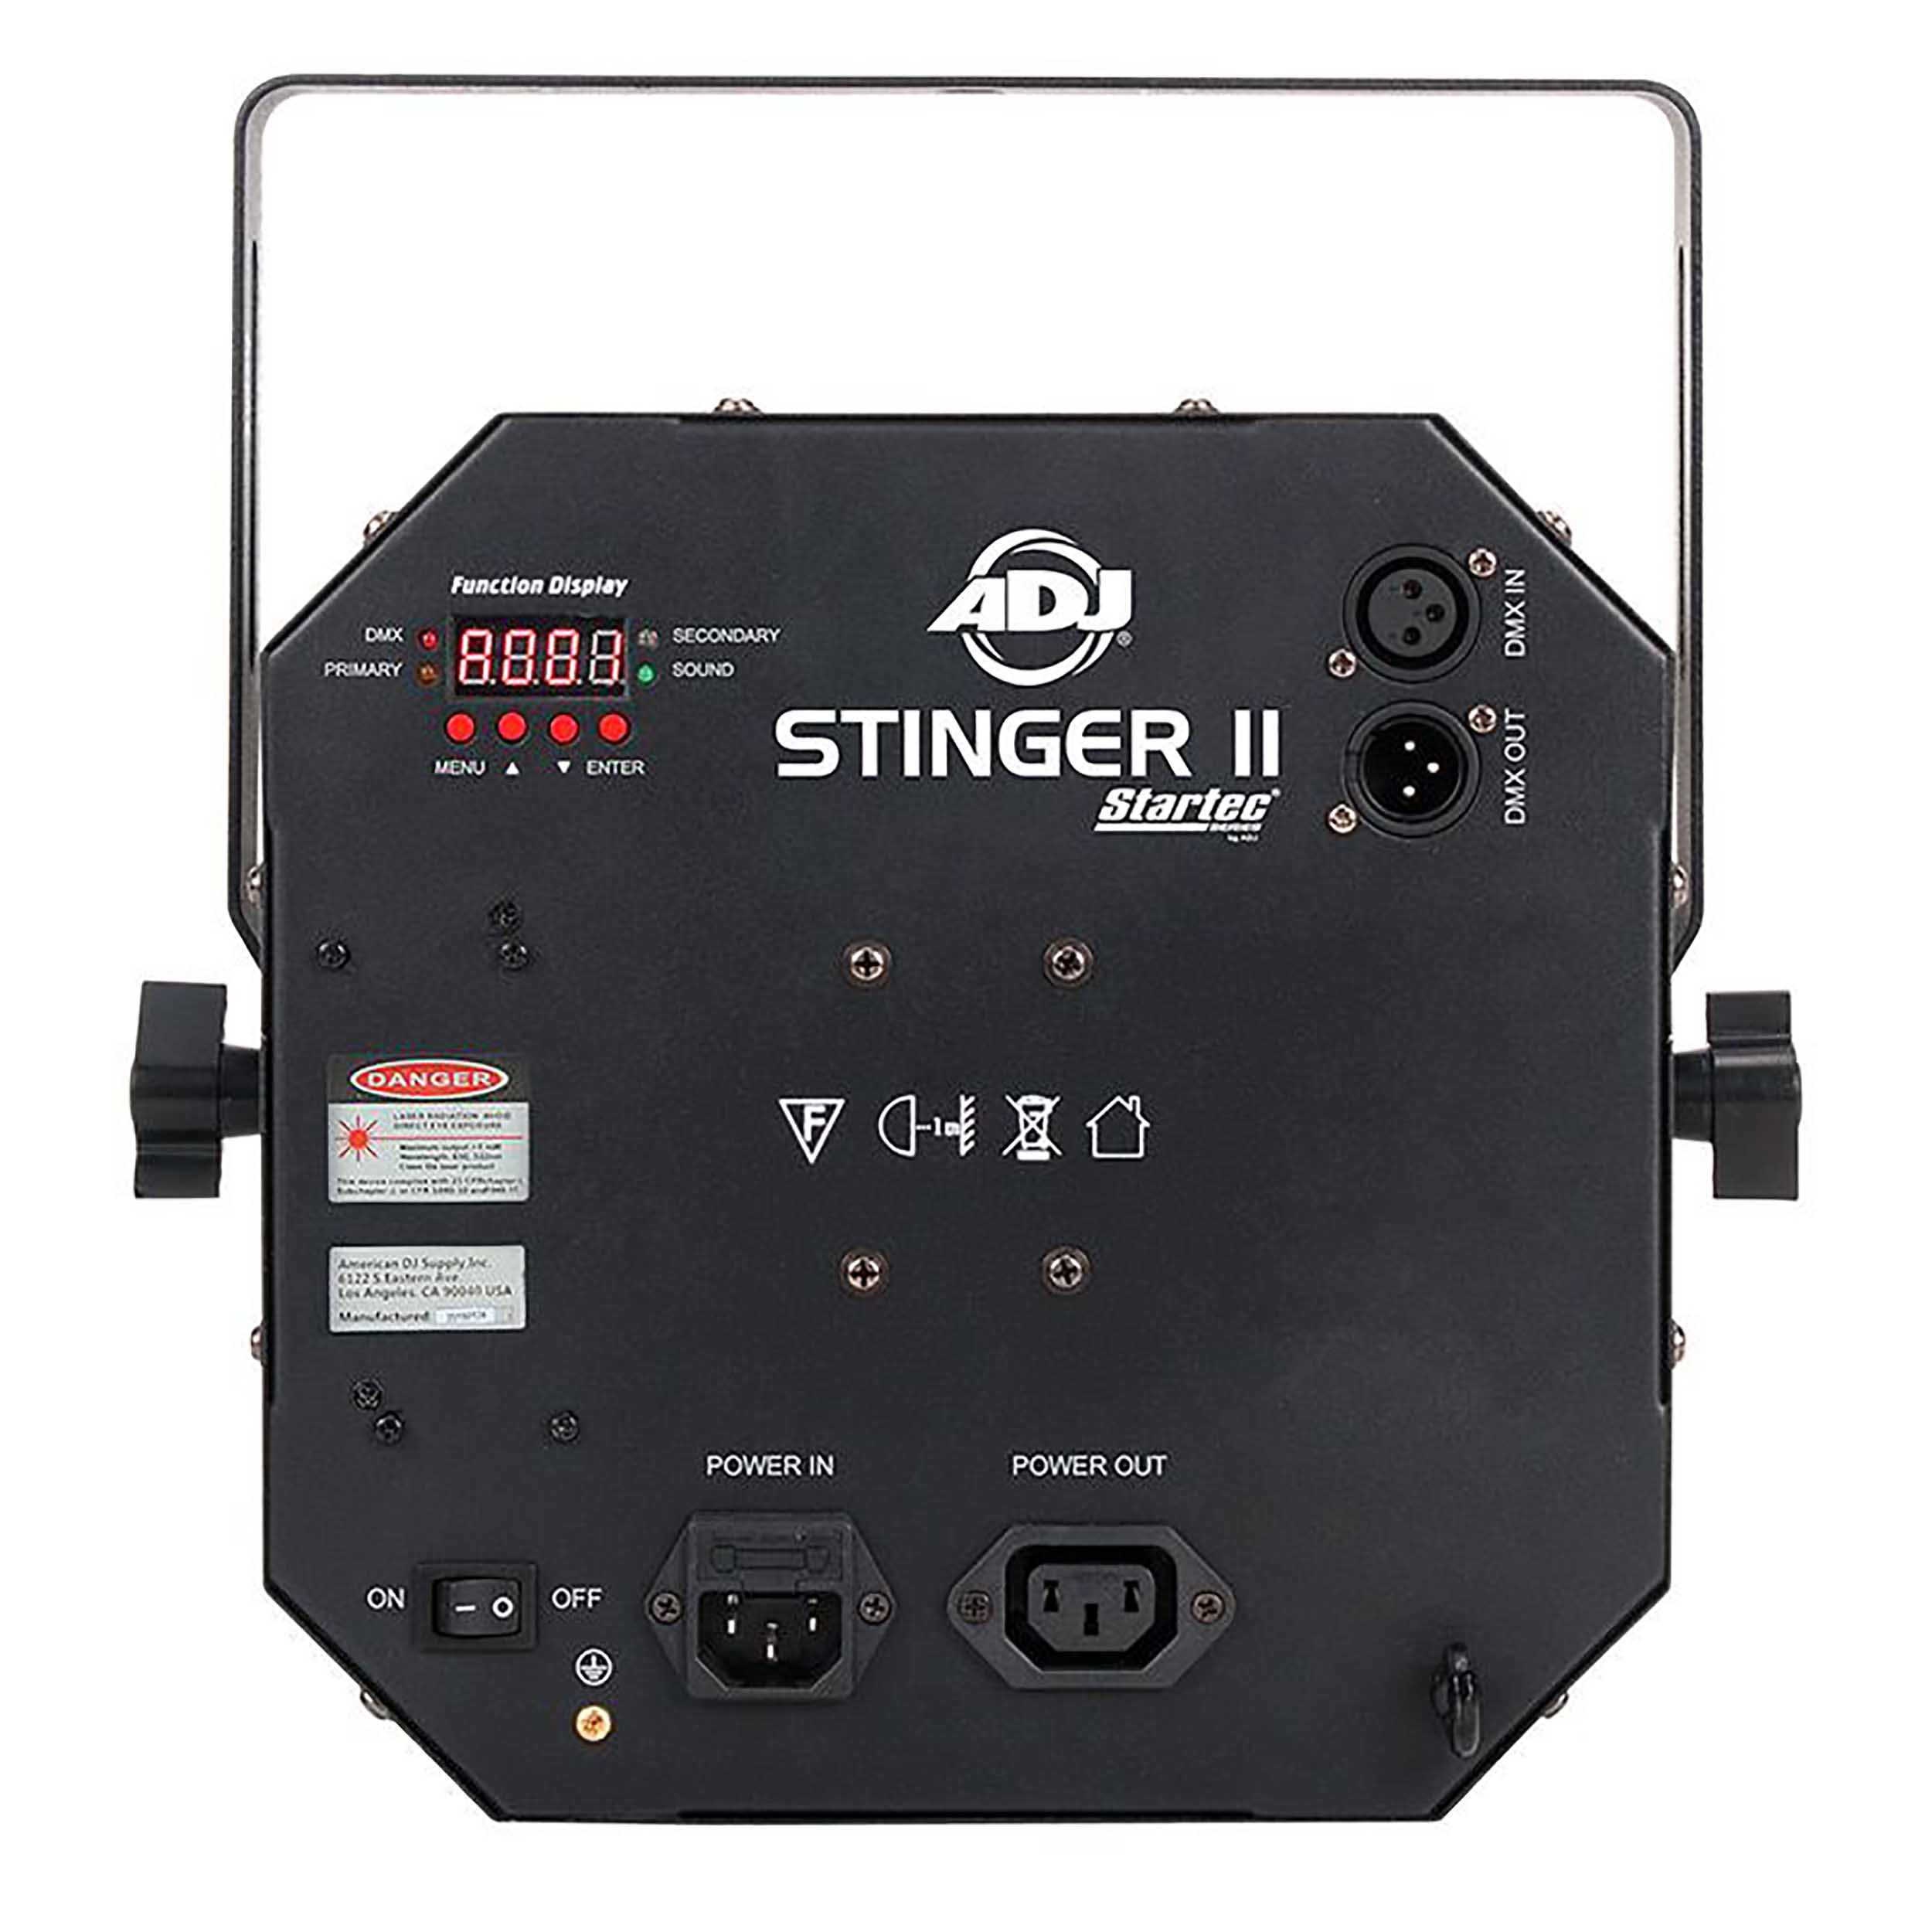 ADJ Stinger II, 3-in-1 LED Moonflower, Laser & Strobe Light Effect Fixture by ADJ